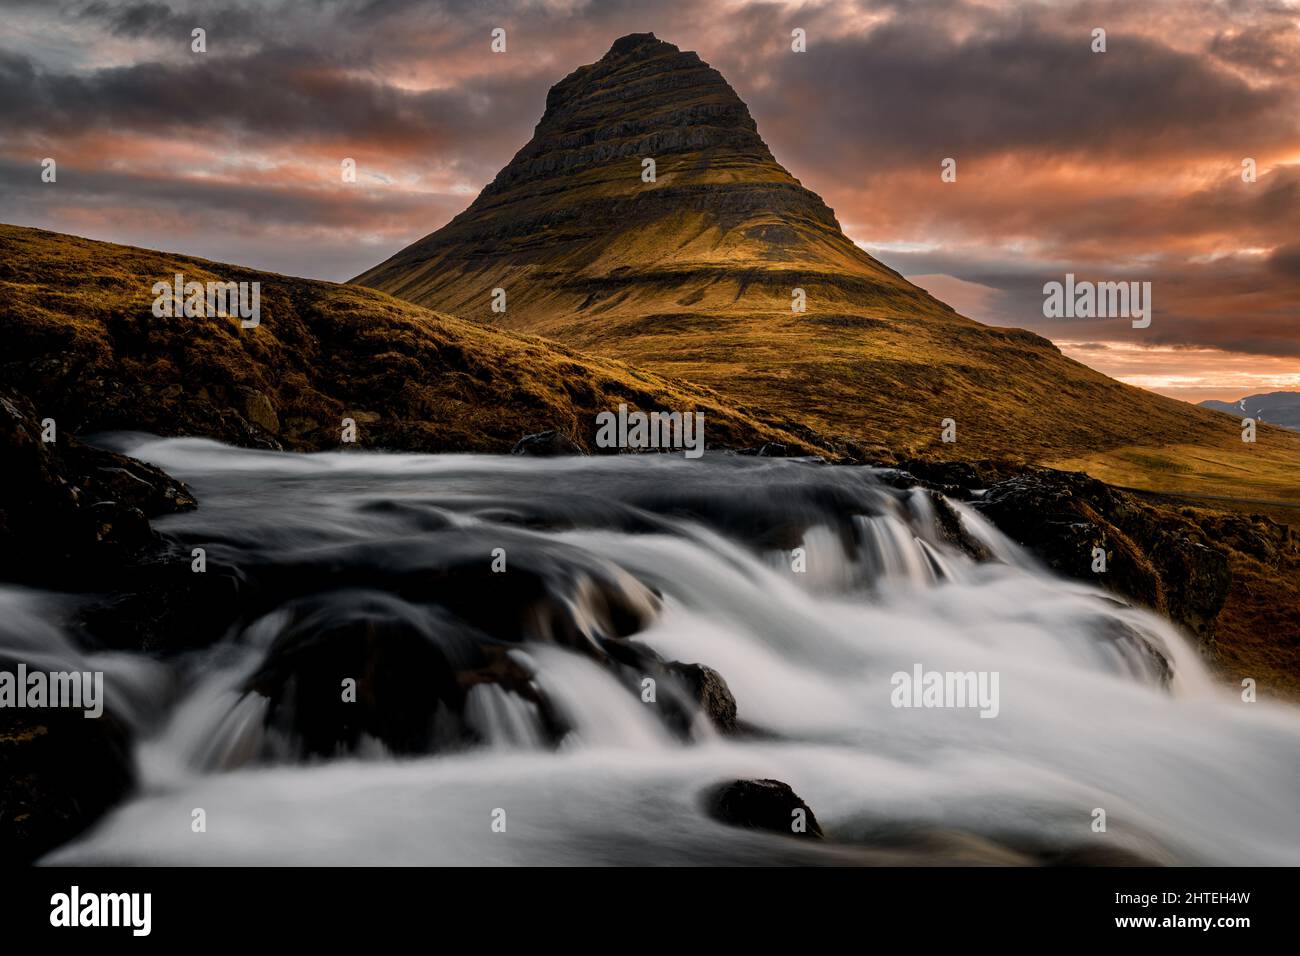 Der berühmte Kirkjufell Berg am Ende des Tages. Stockfoto